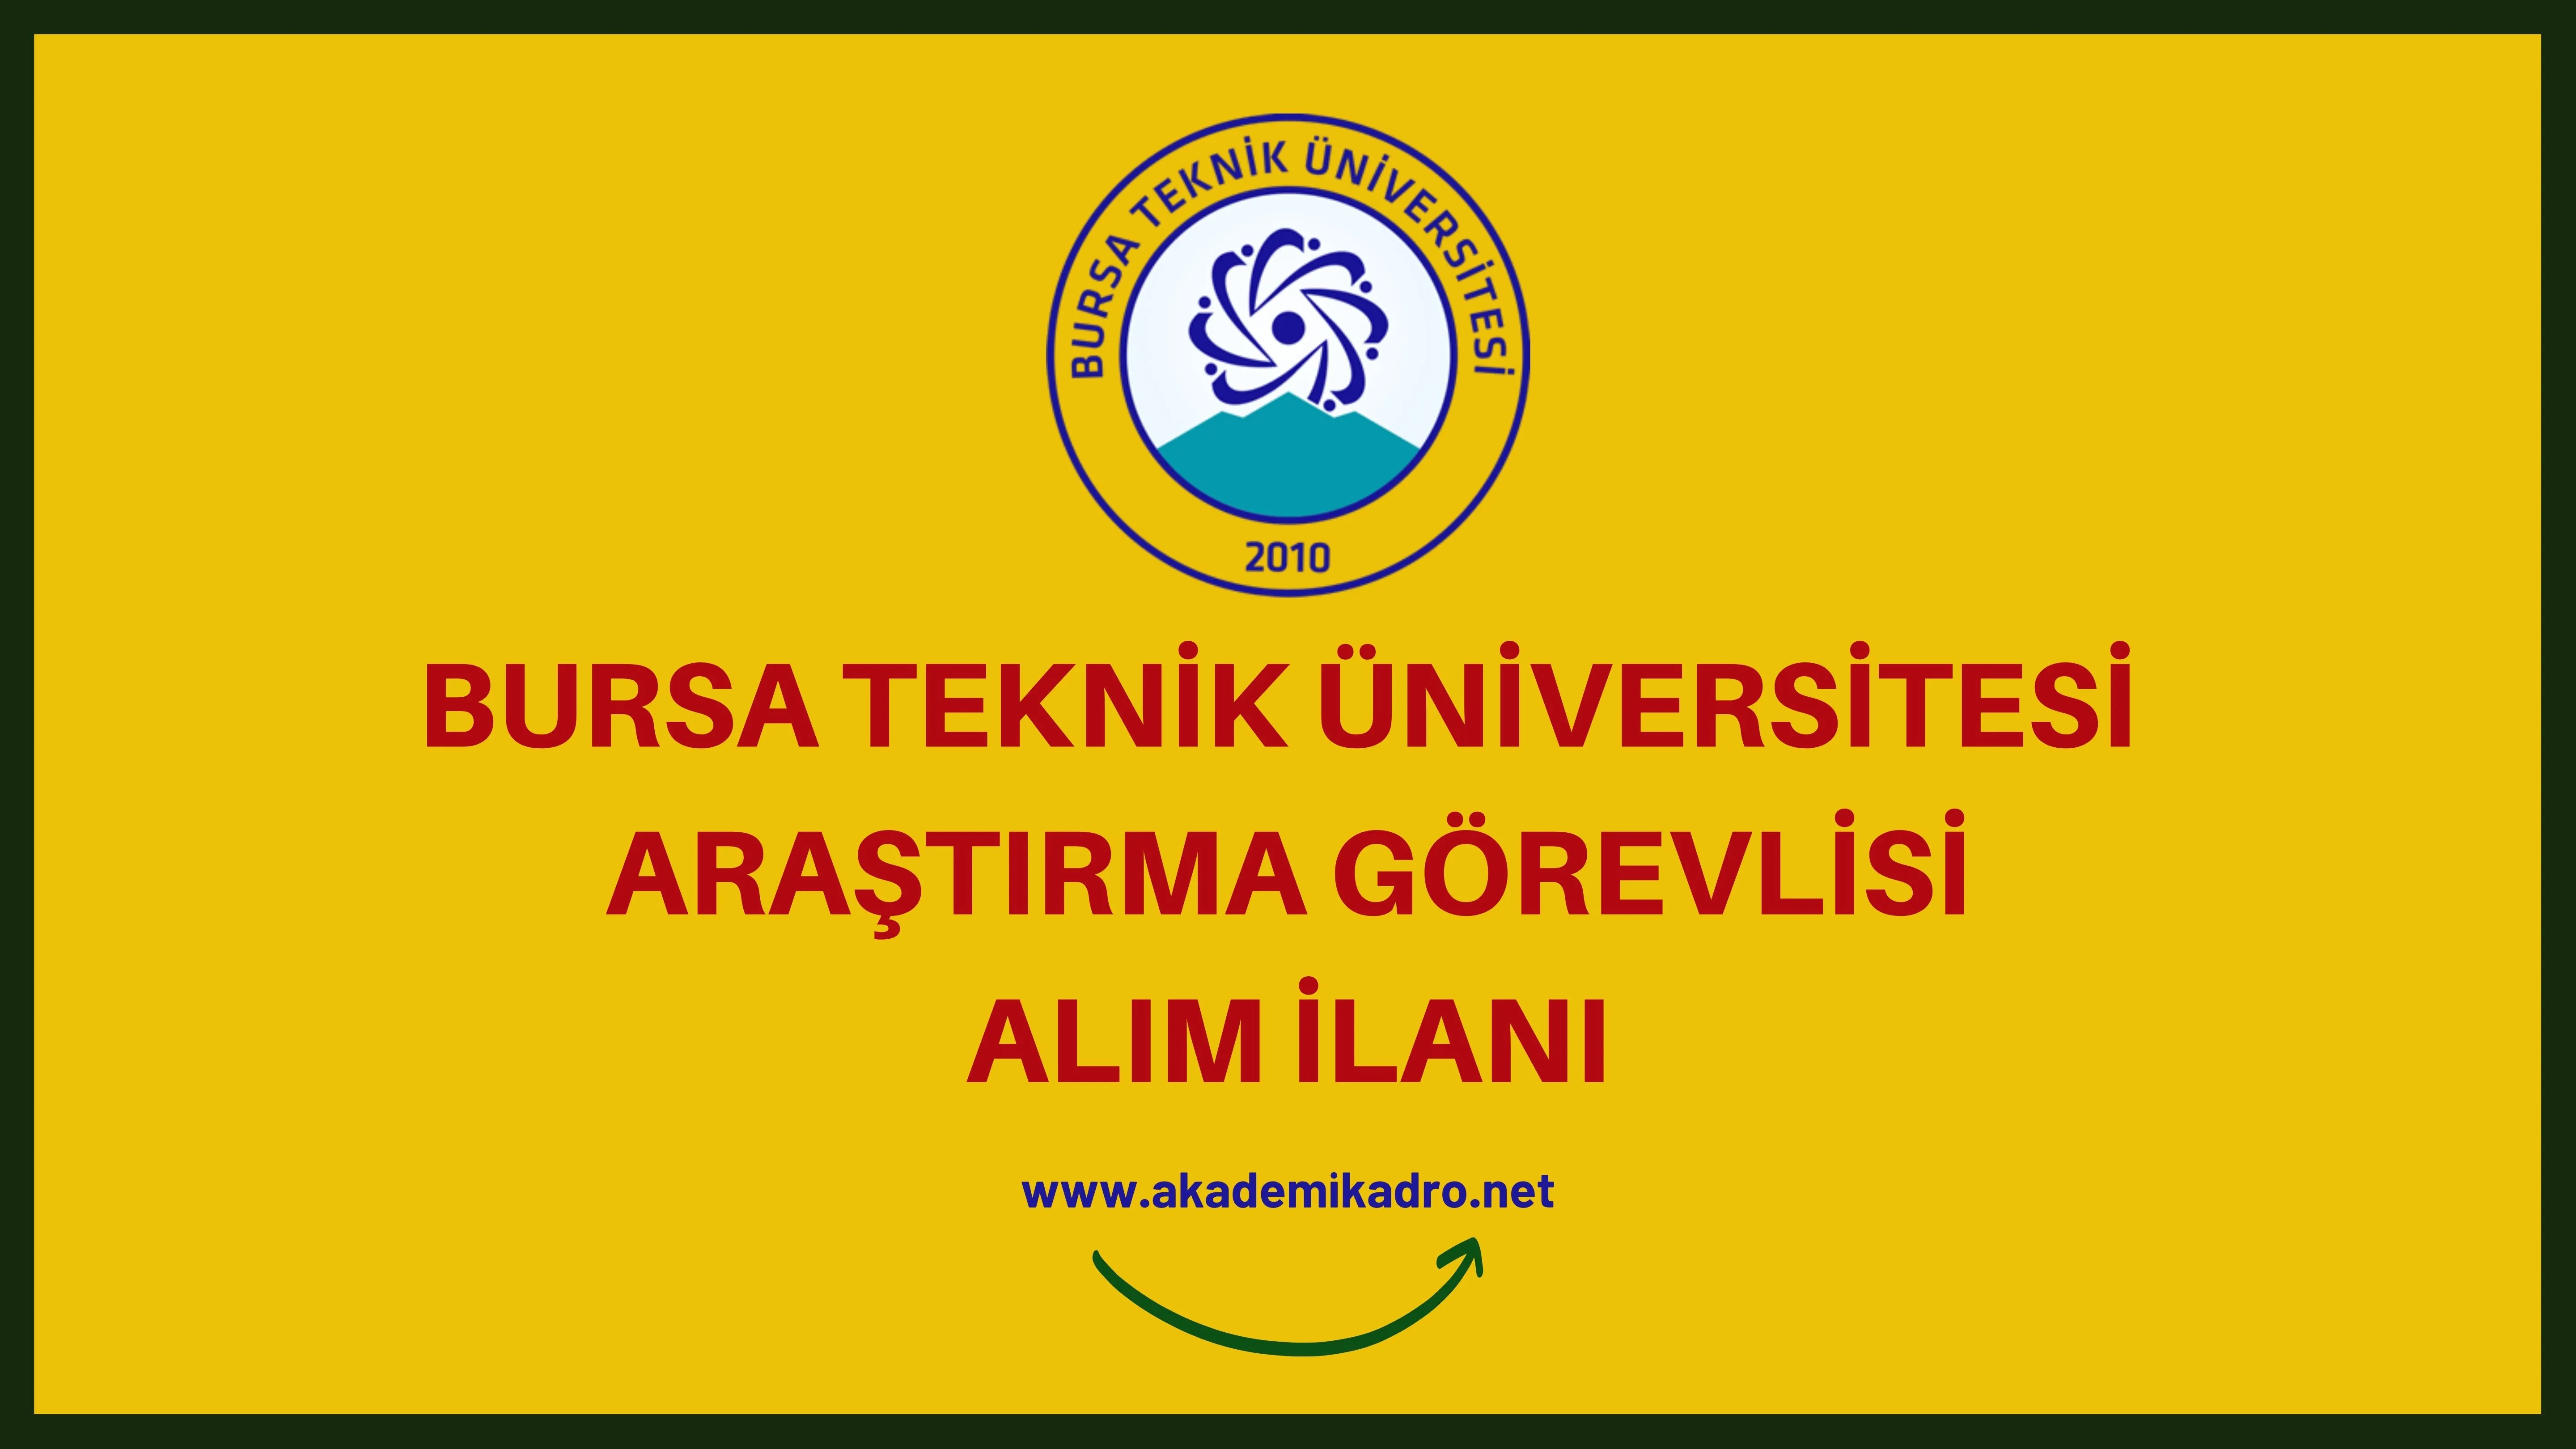 Bursa Teknik Üniversitesi 6 Araştırma Görevlisi alacak.